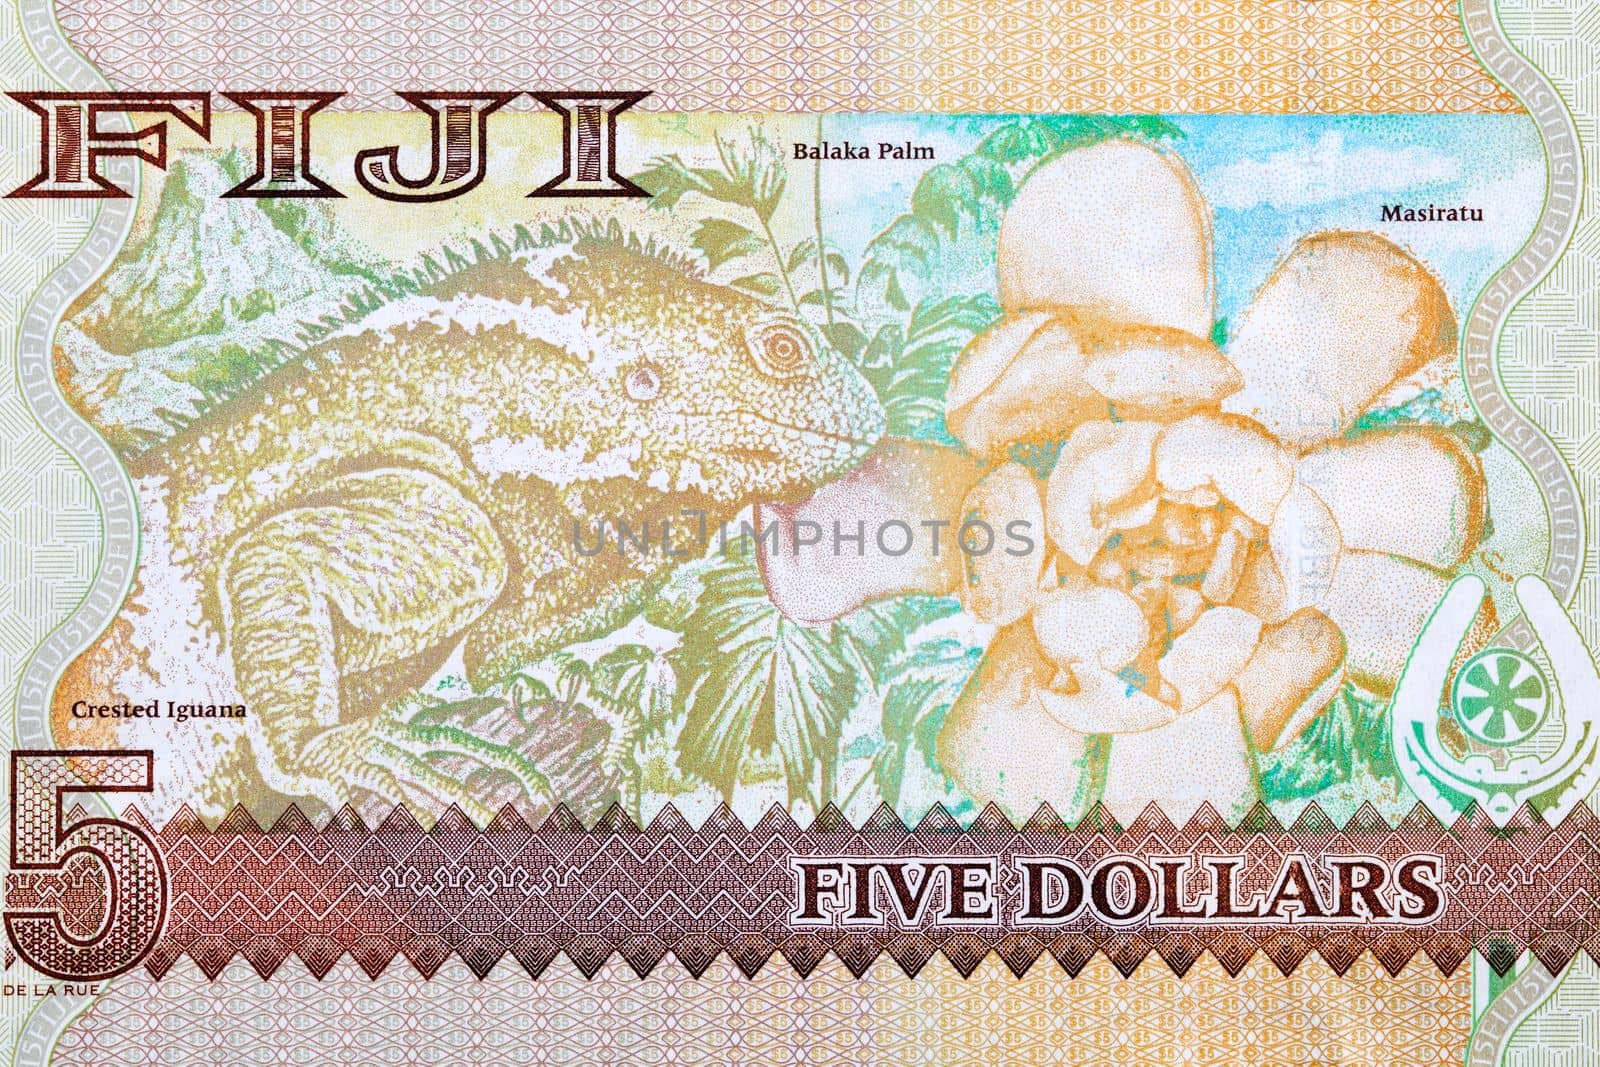 Iguana and Balaka palm from Fijian money - Dollars